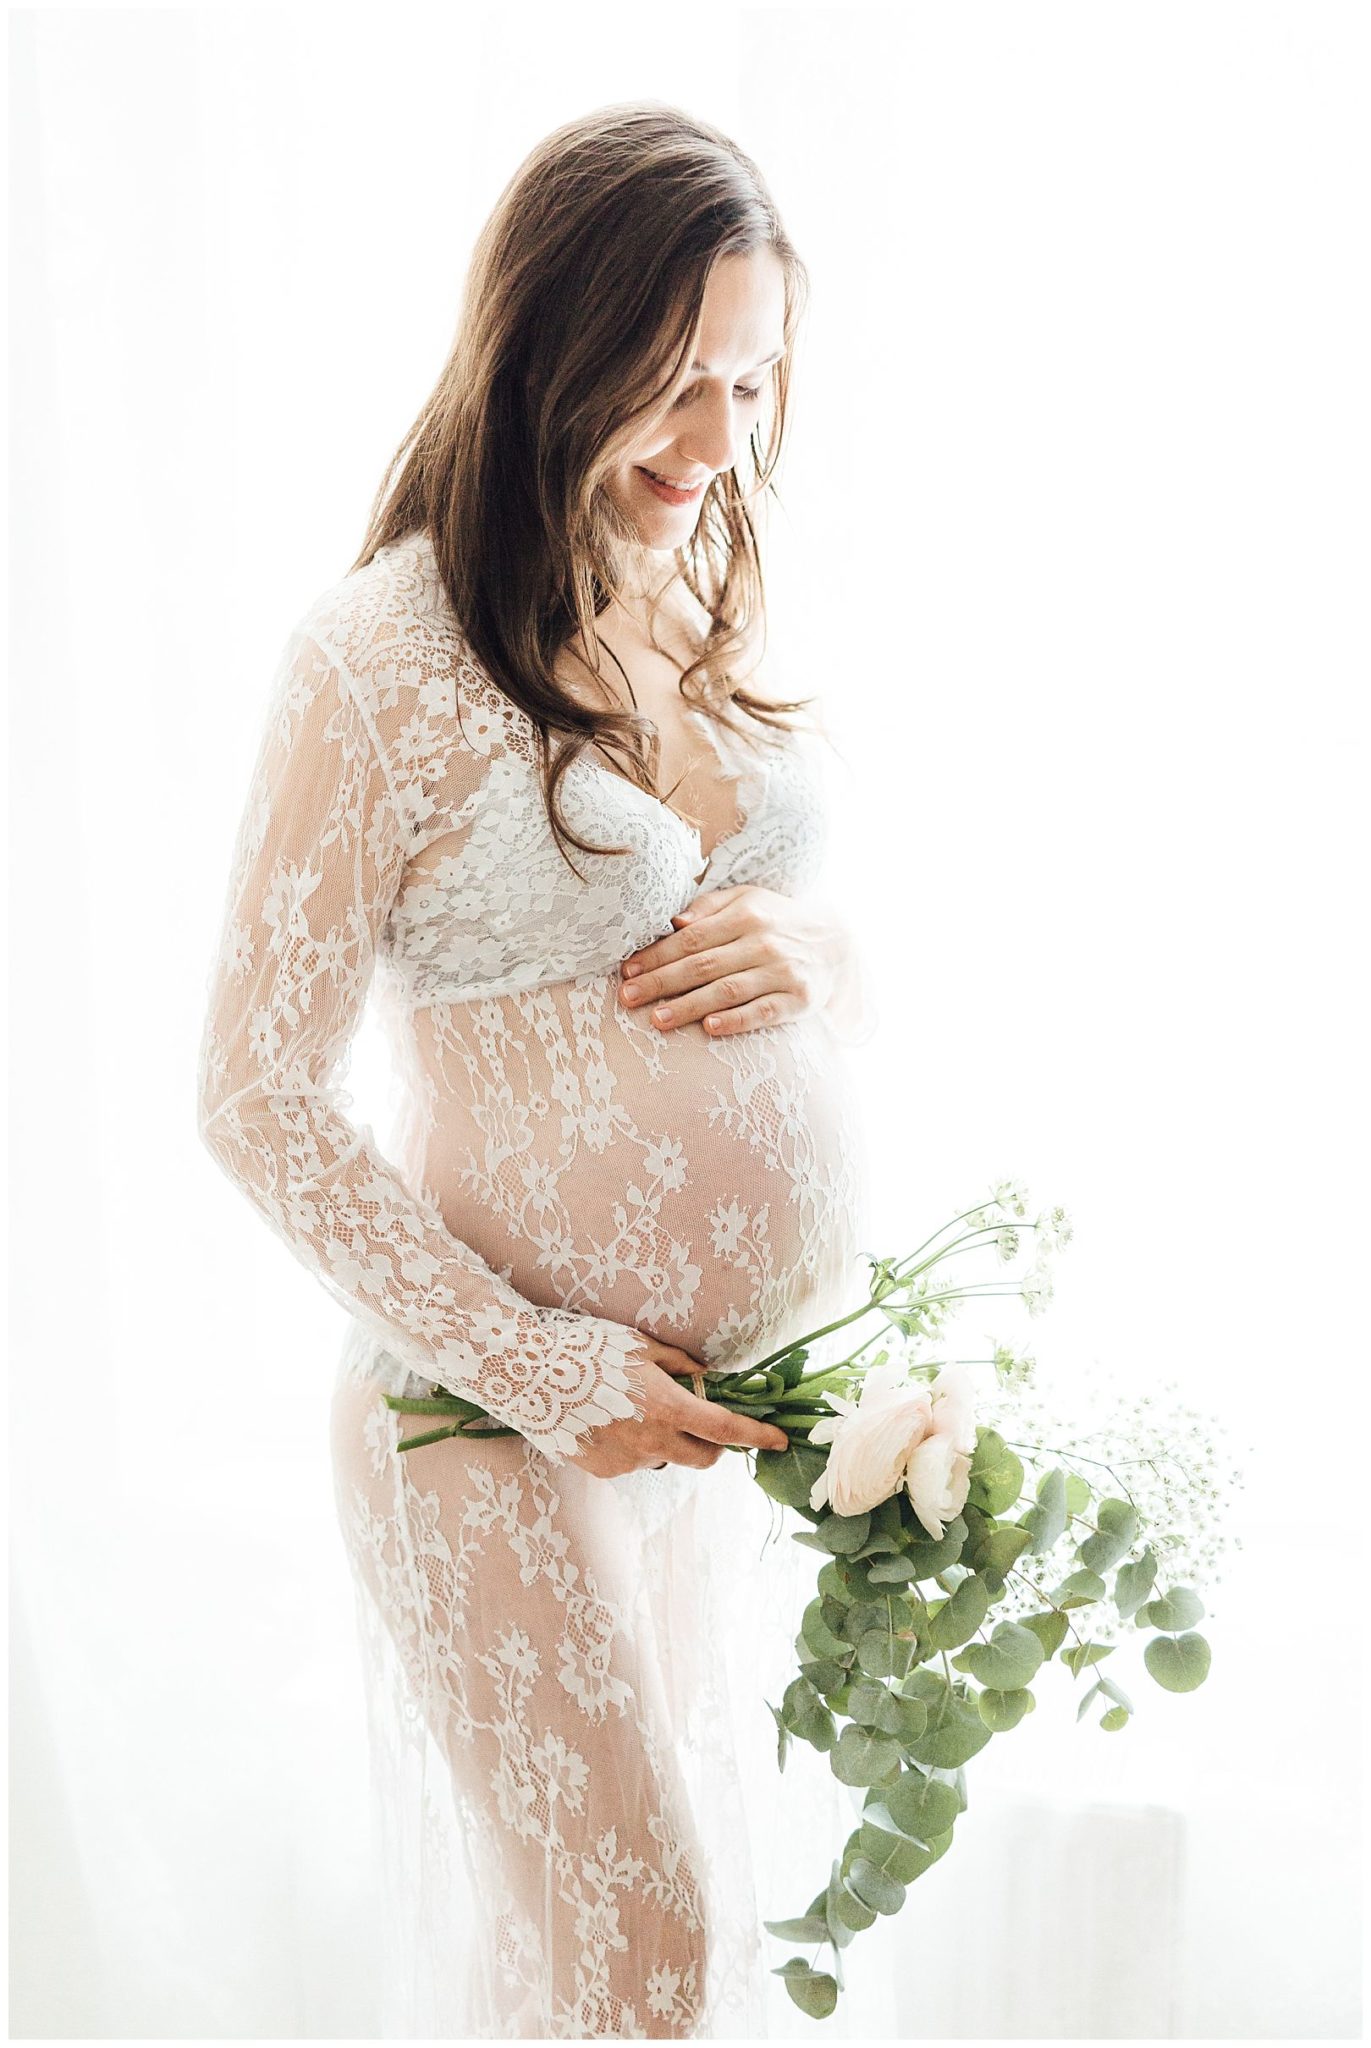 Eine schwangere Frau im Spitzenkleid mit Blumenstrauß